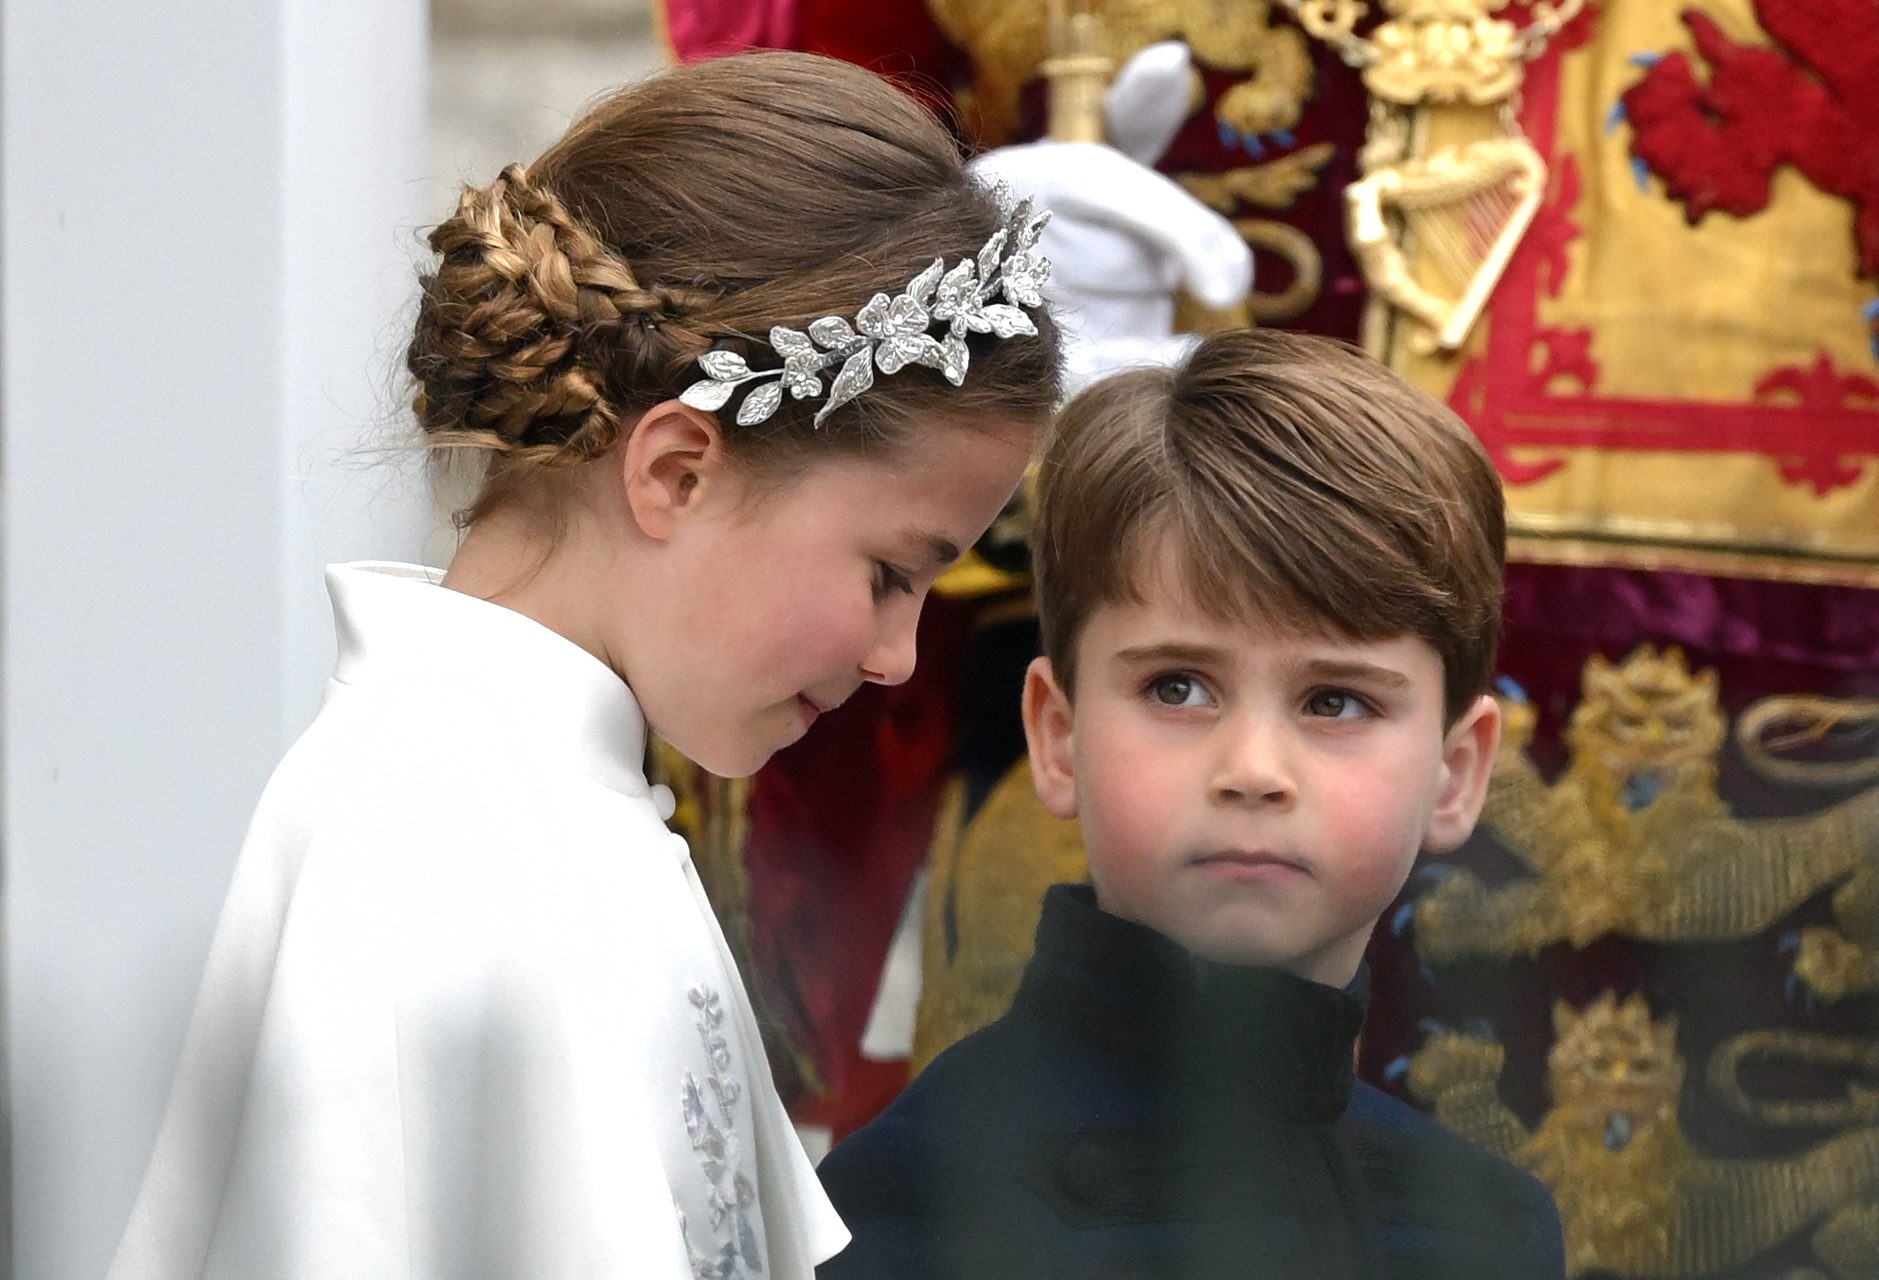 <p>L'evento più trascendentale è stato sicuramente la salita al trono di re Carlo III, che ci ha regalato alcune delle istantanee più memorabili della monarchia britannica della nostra epoca.</p>